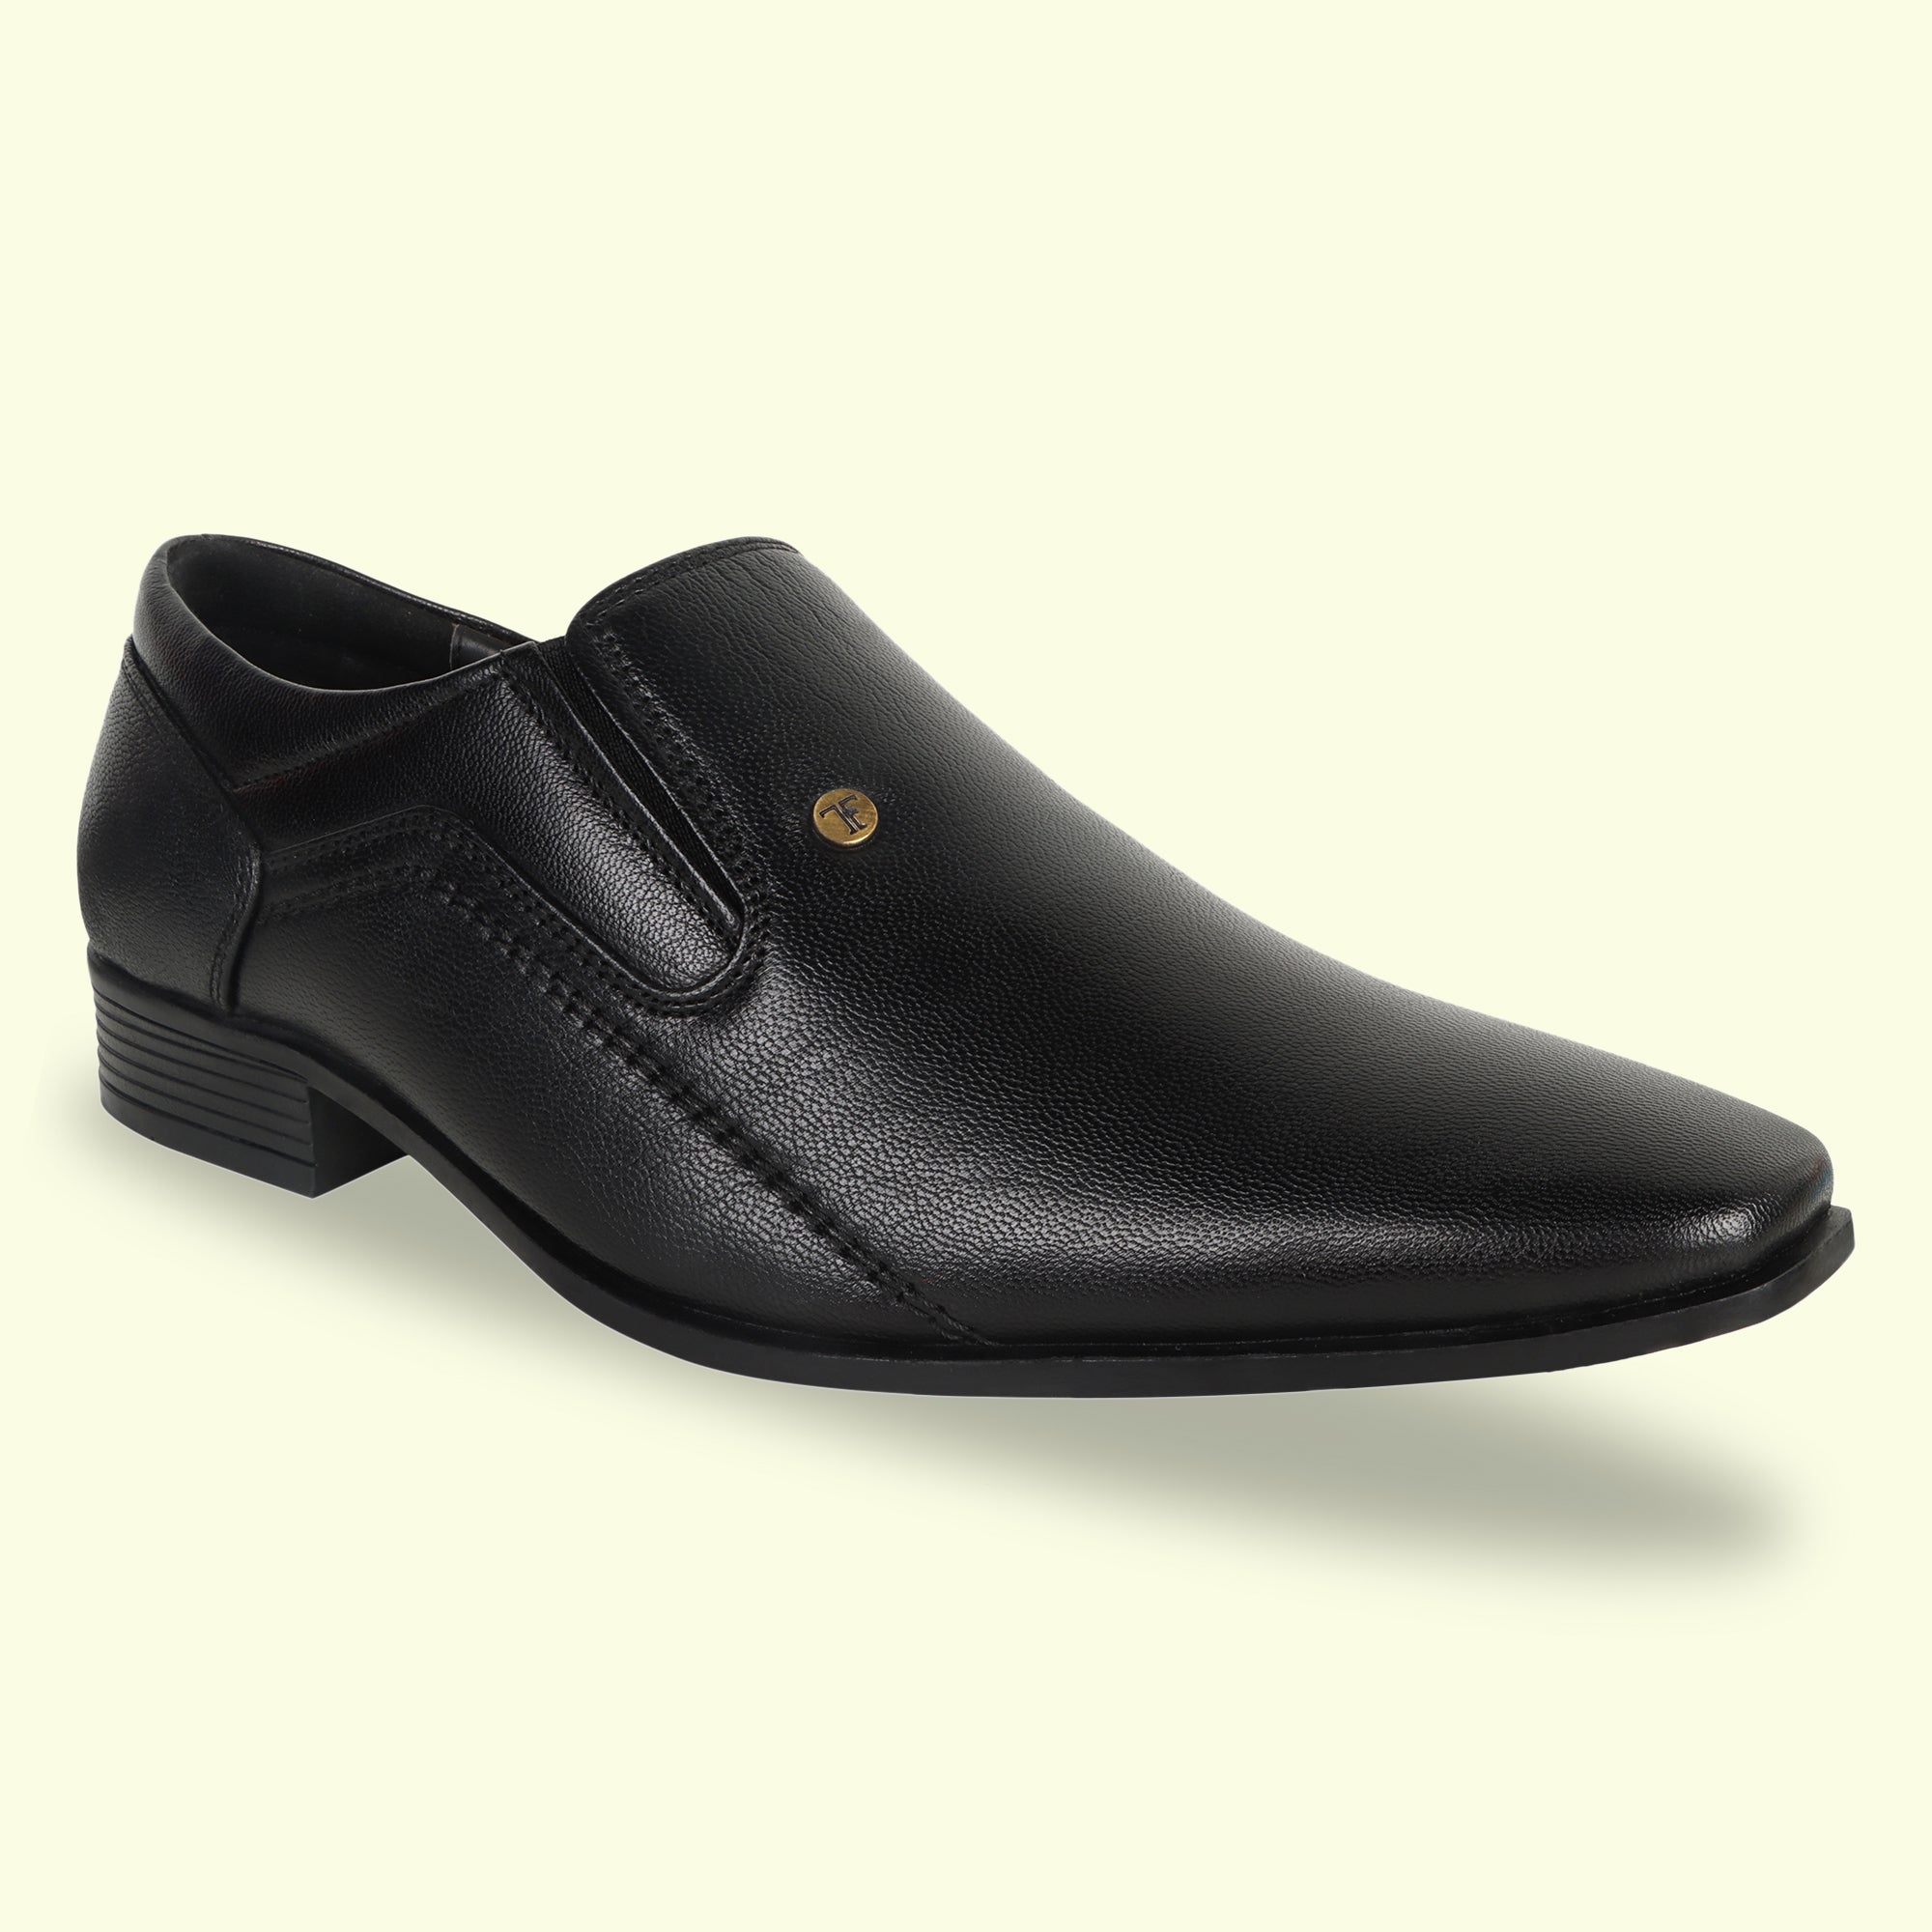 TRUDGE Black Moccasin Formal Shoe For Men - 5020